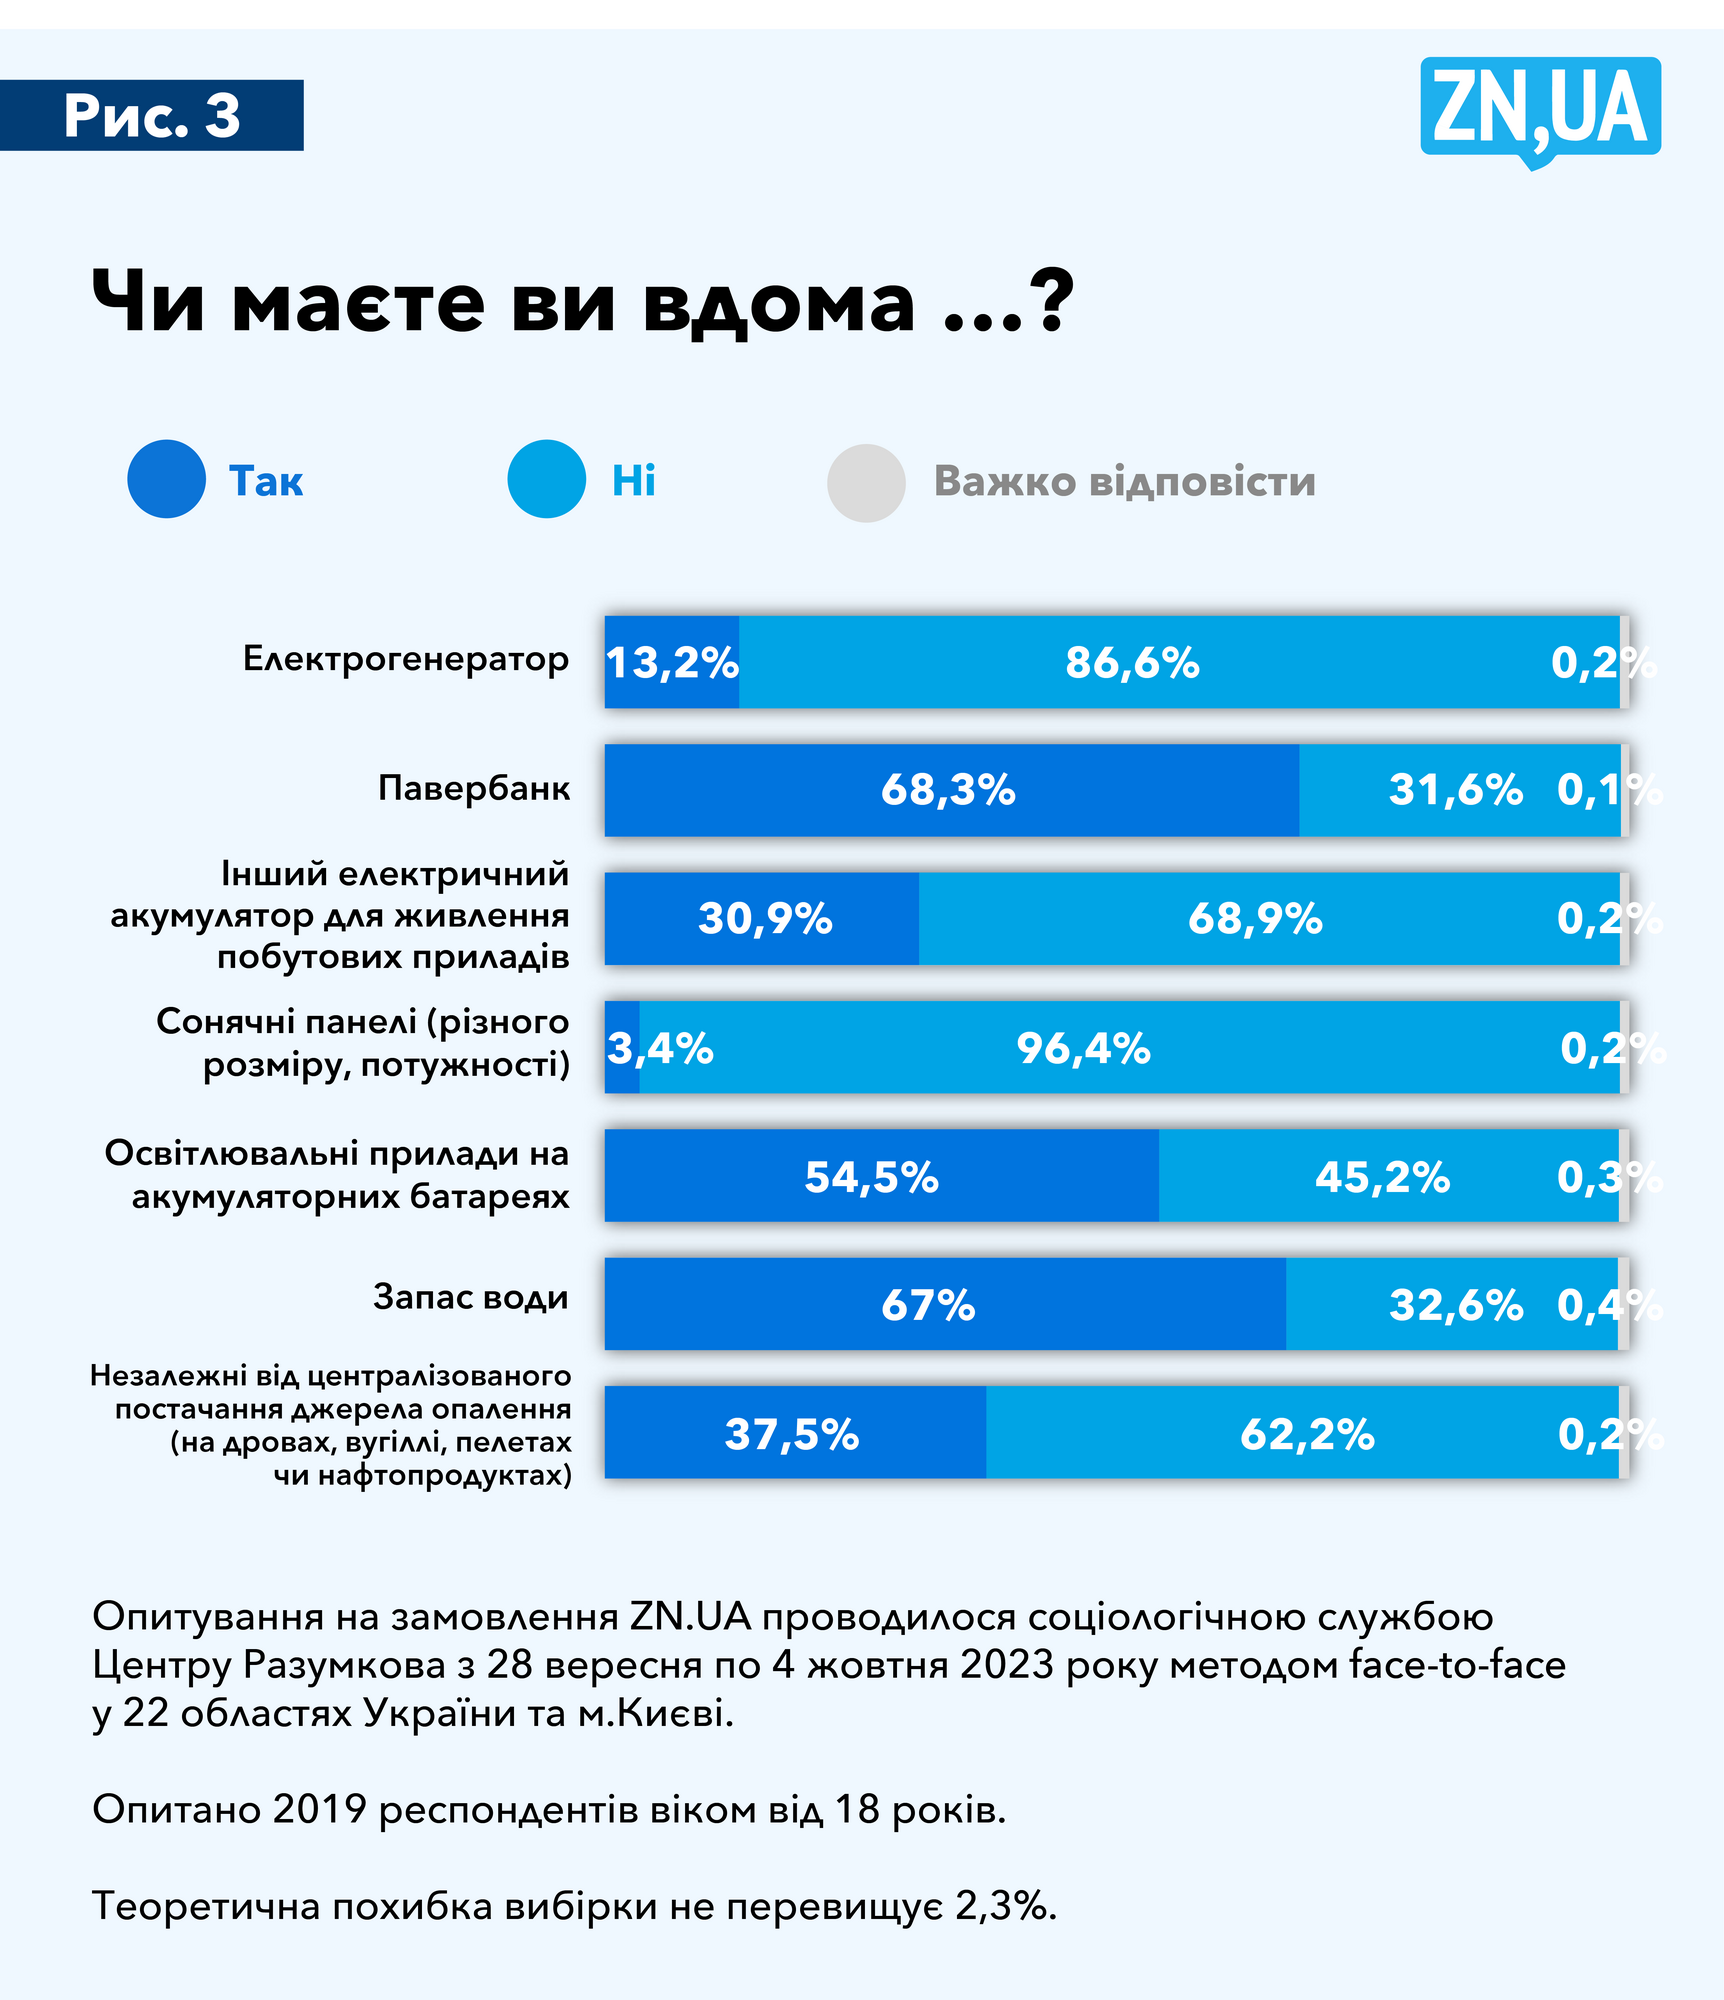 Только 5% украинцев собираются уехать из Украины на зимовку из-за угроз обстрелов инфраструктуры – опрос